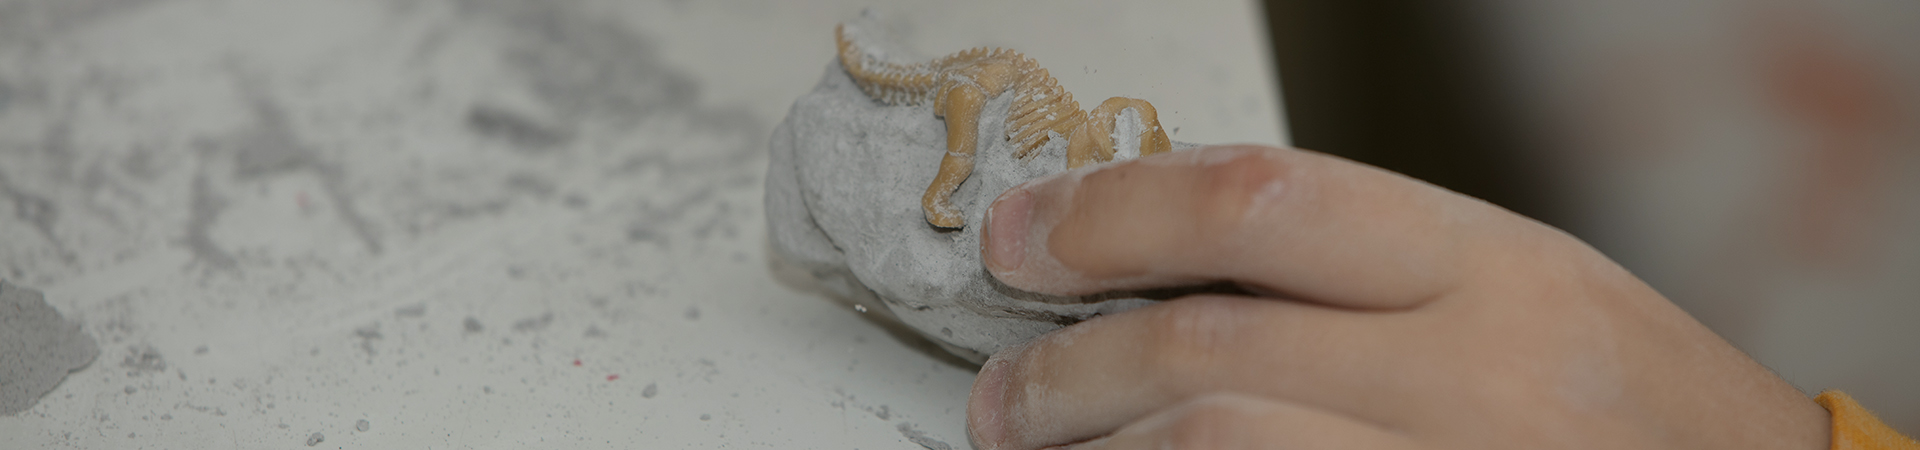 bild av ett pedagogiskt spel för att hitta fossiler för en liten arkeolog, med barnhänder grävande